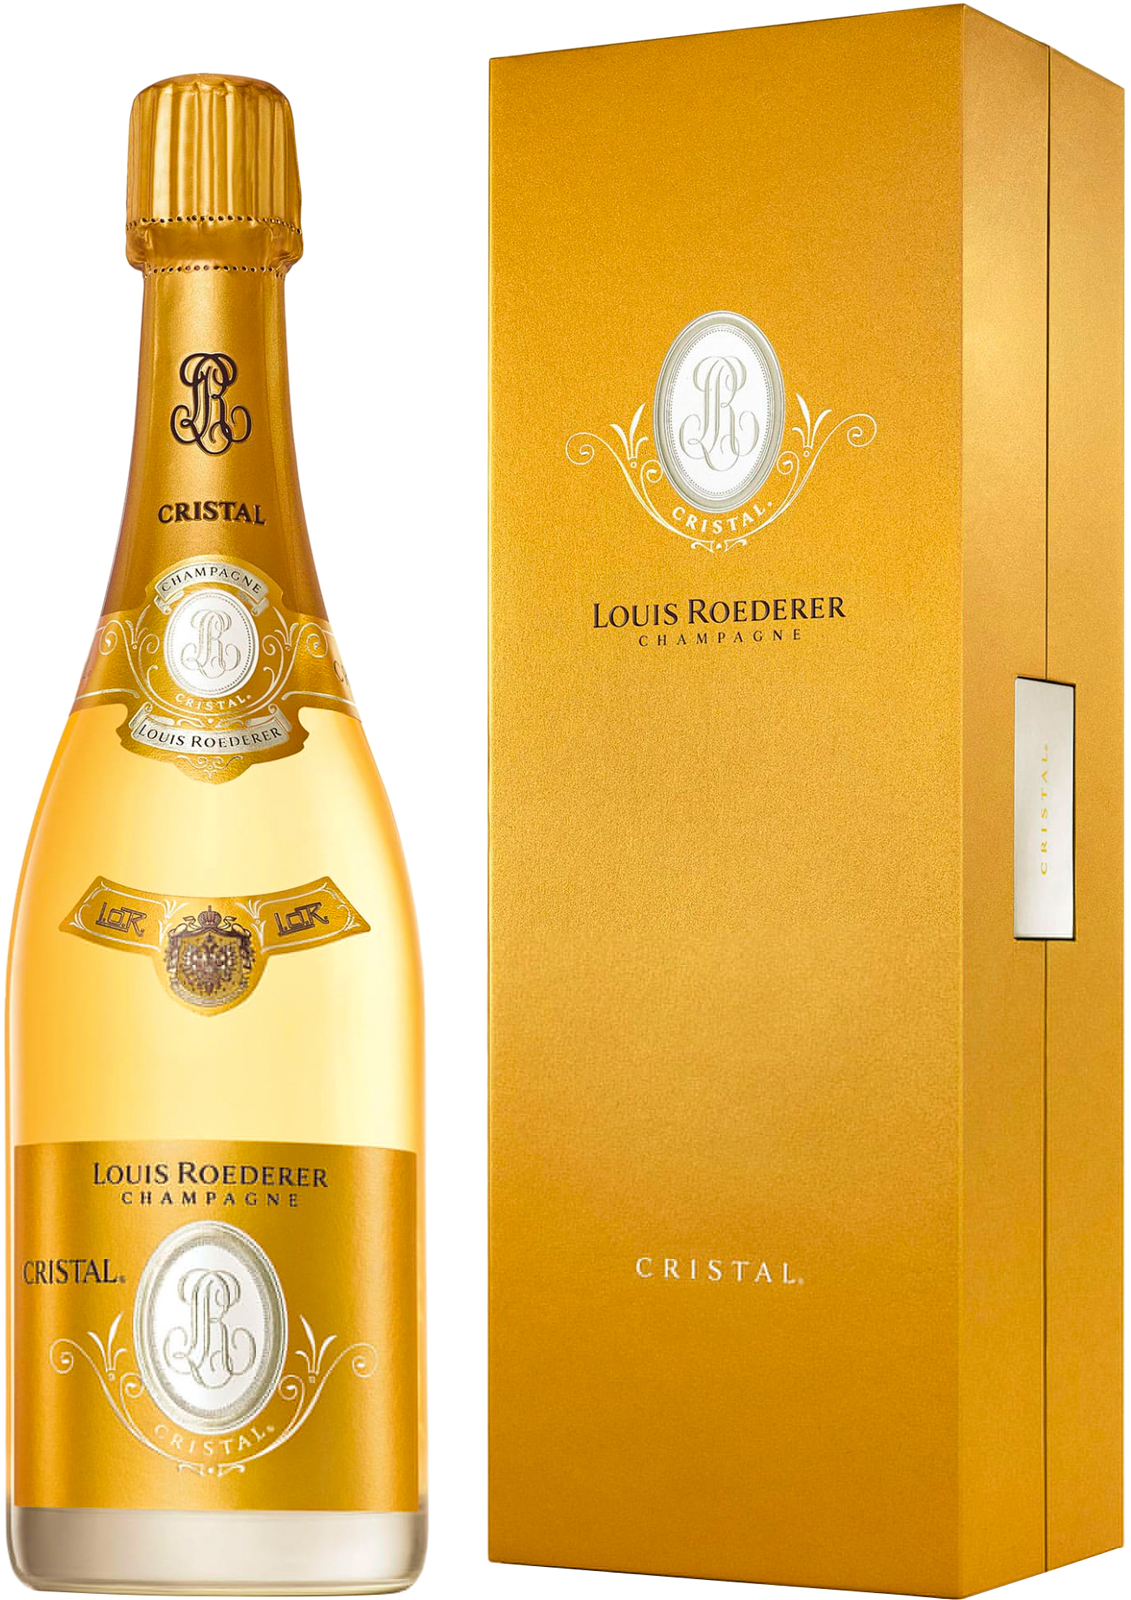 Cristal roederer ros en coffret 2012  Roederer, Champagne